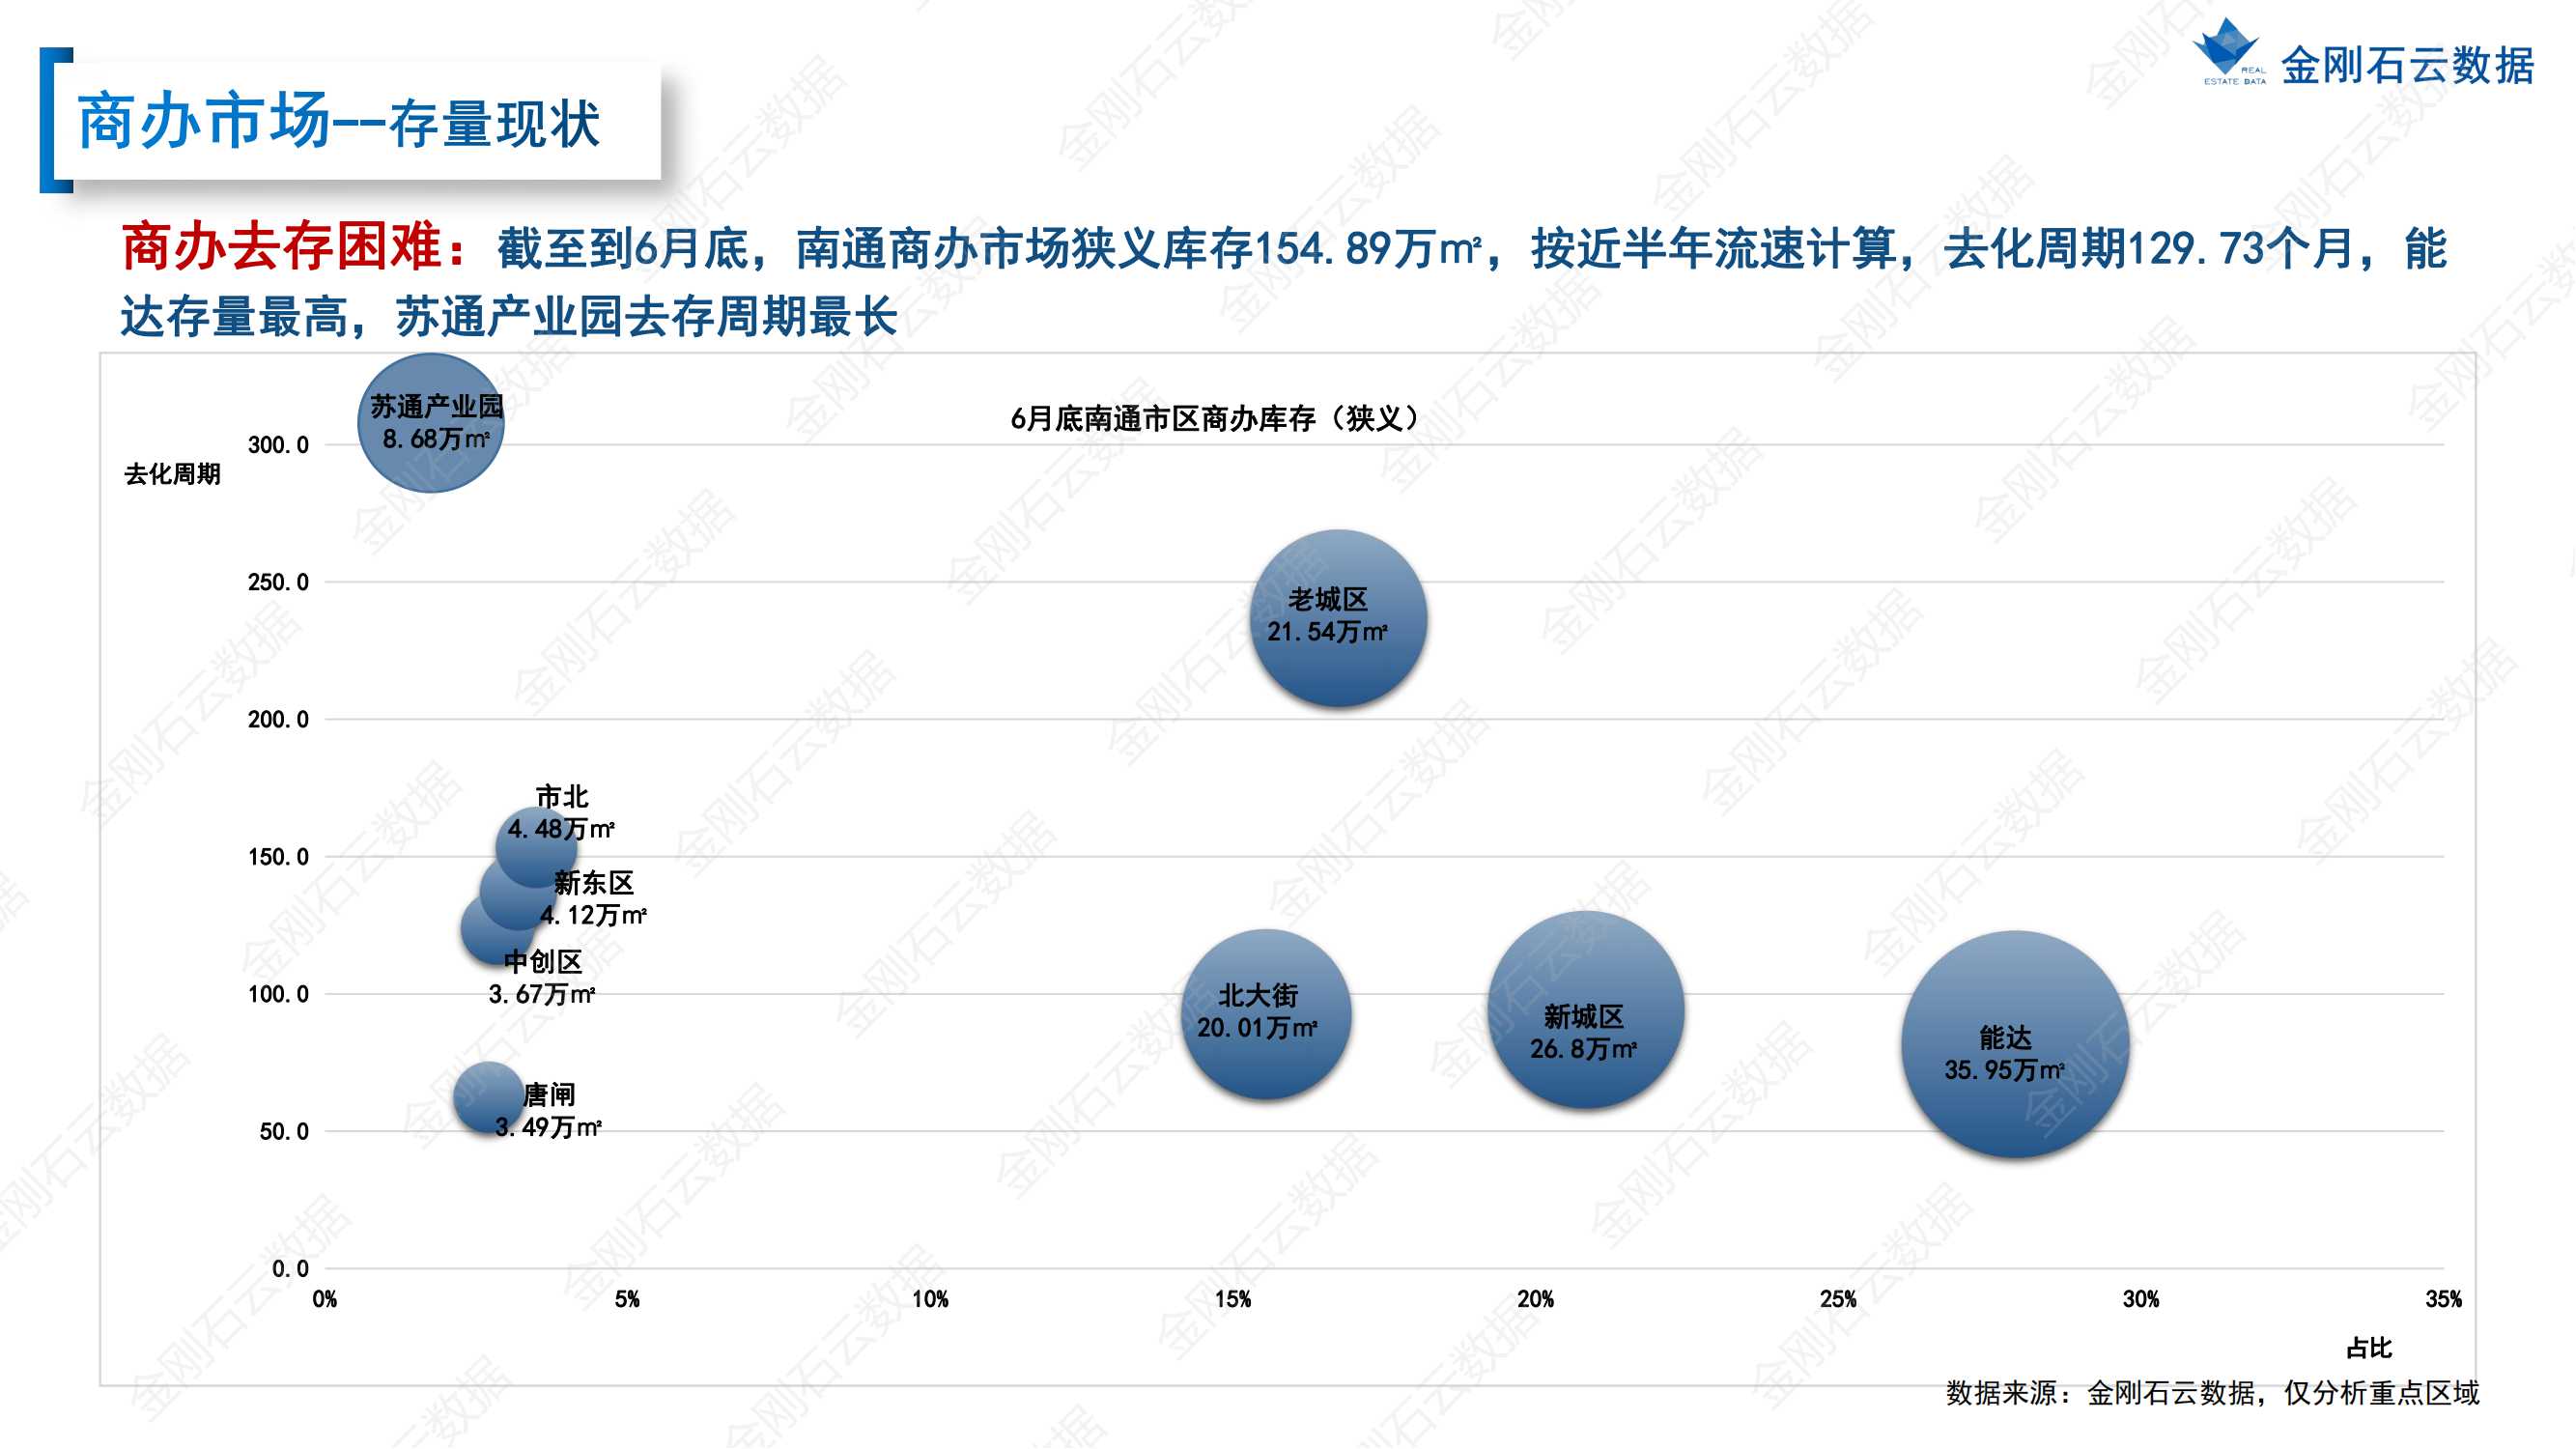 【江苏南通】2022年上半年度市场报告(图34)